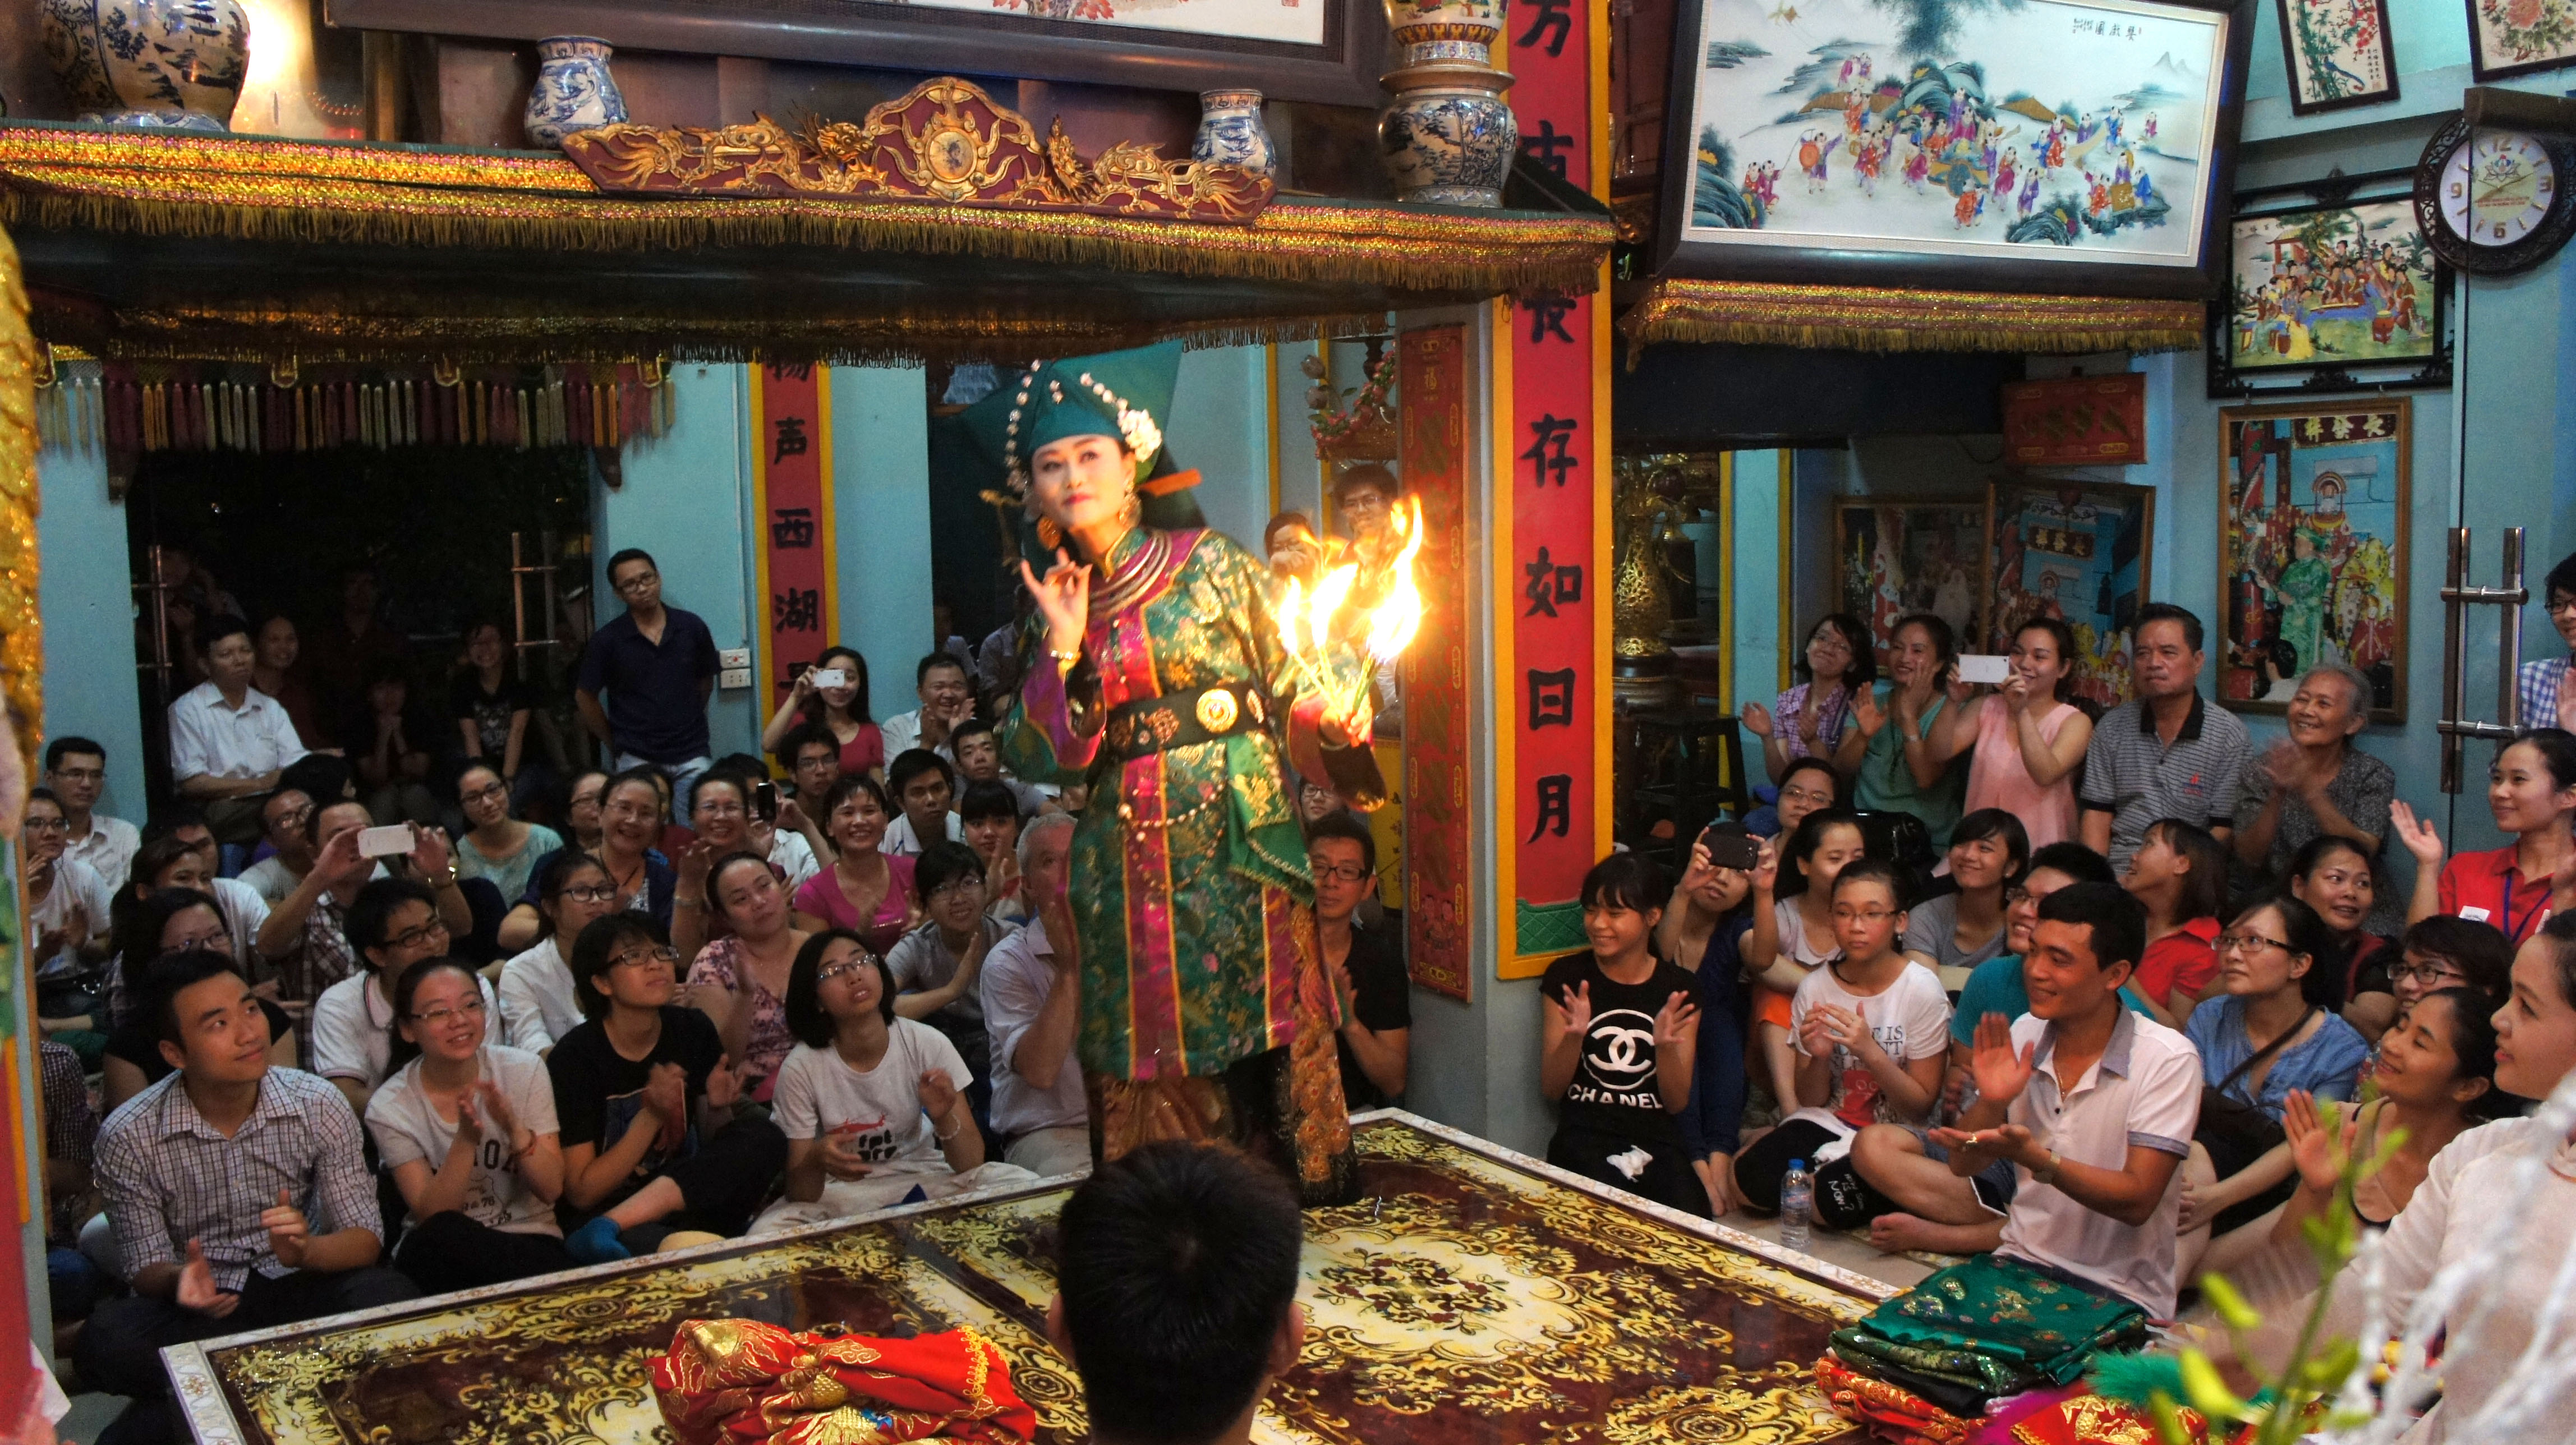 Hà Nội: Liên hoan văn hóa tín ngưỡng thờ Mẫu 2014